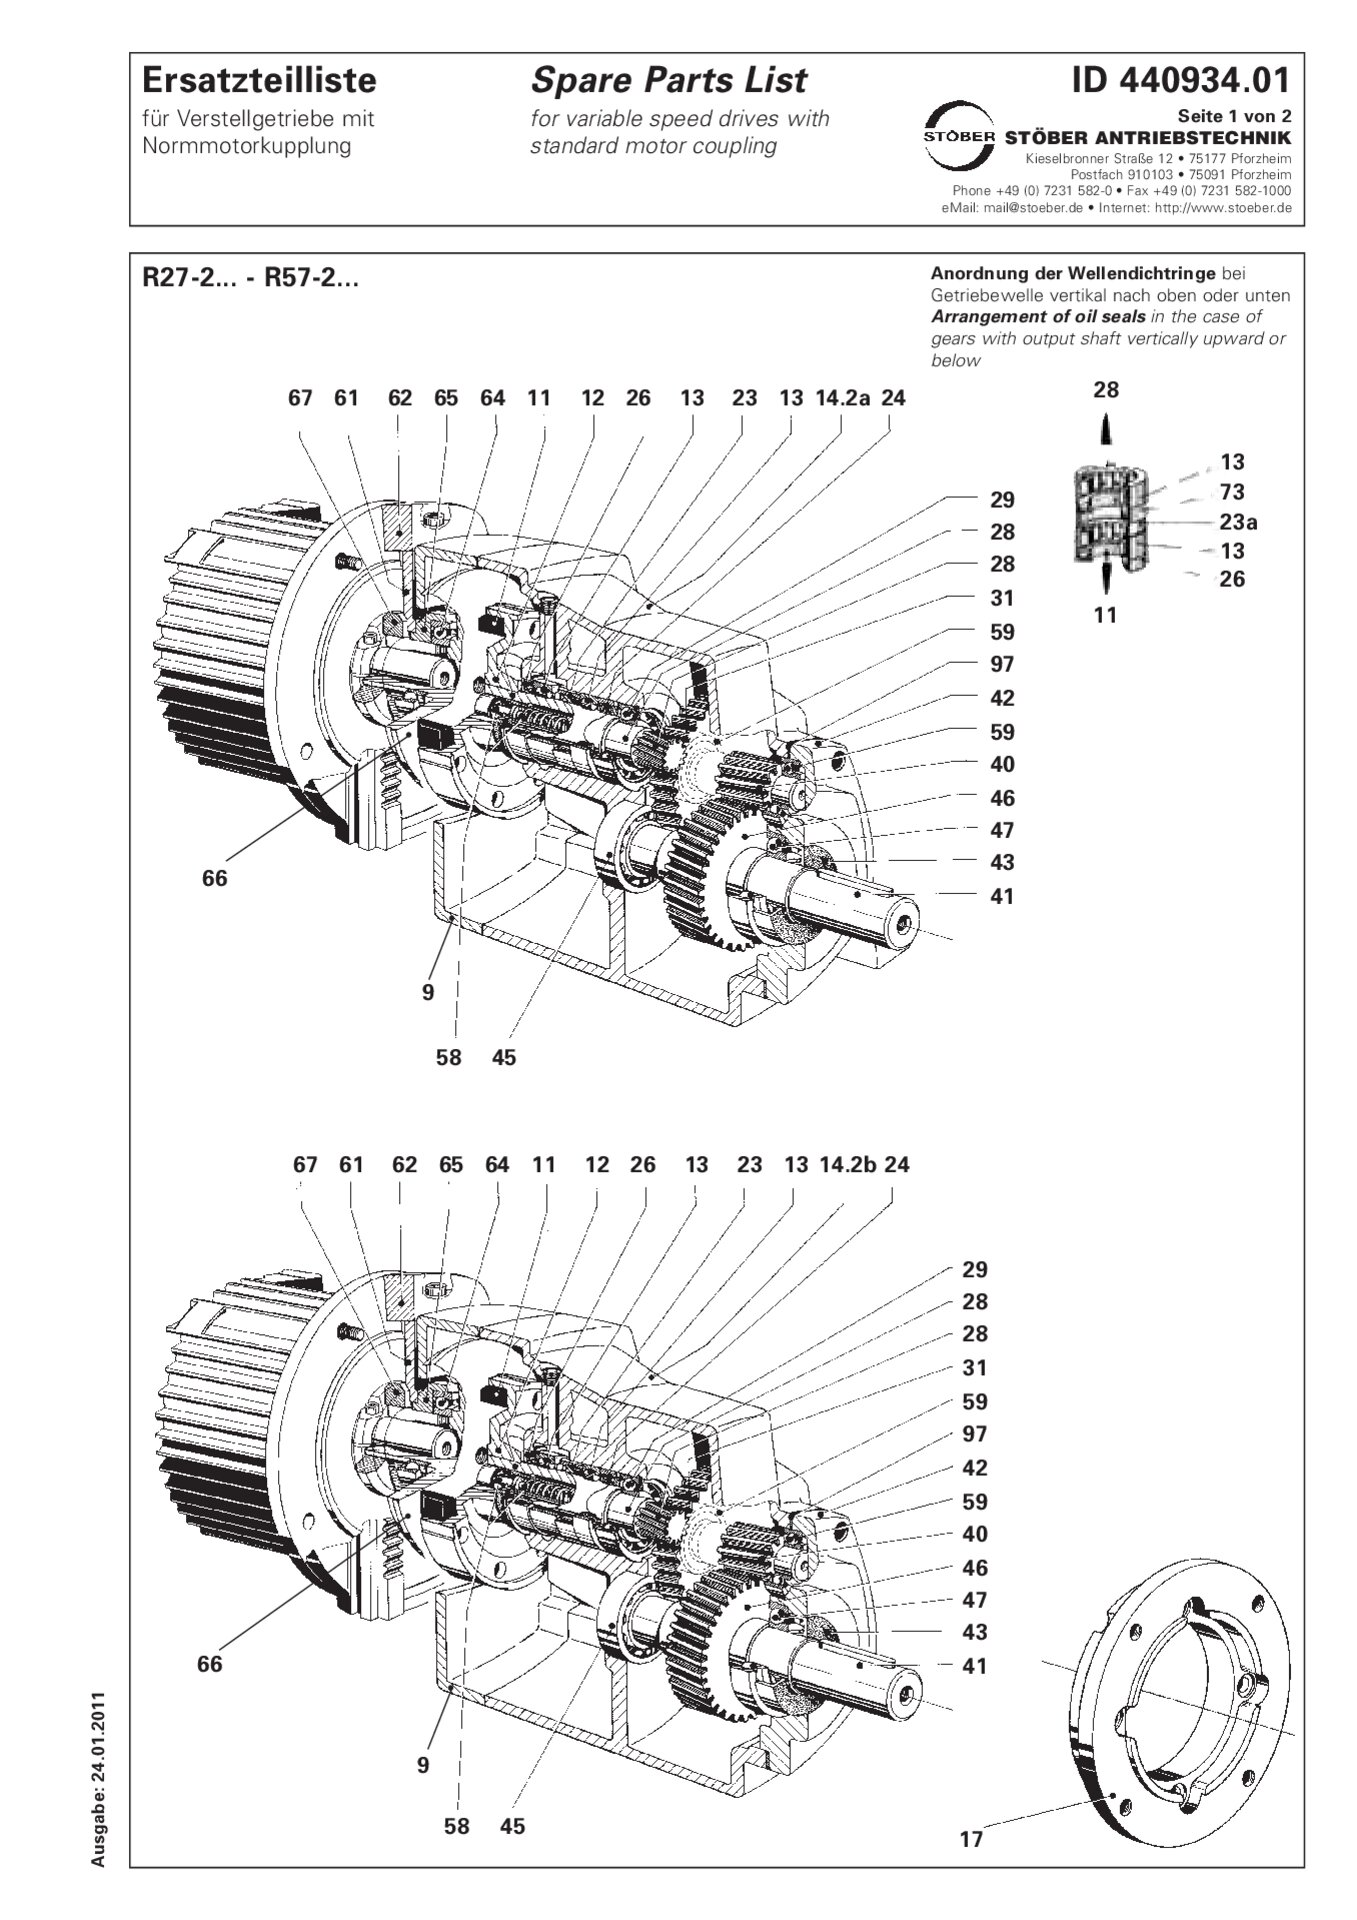 Ersatzteilliste R27-2/R37-2/R47-2/R57-2 mit NormmotorkupplungSpare parts list R27-2/R37-2/R47-2/R57-2 with standard motor coupling